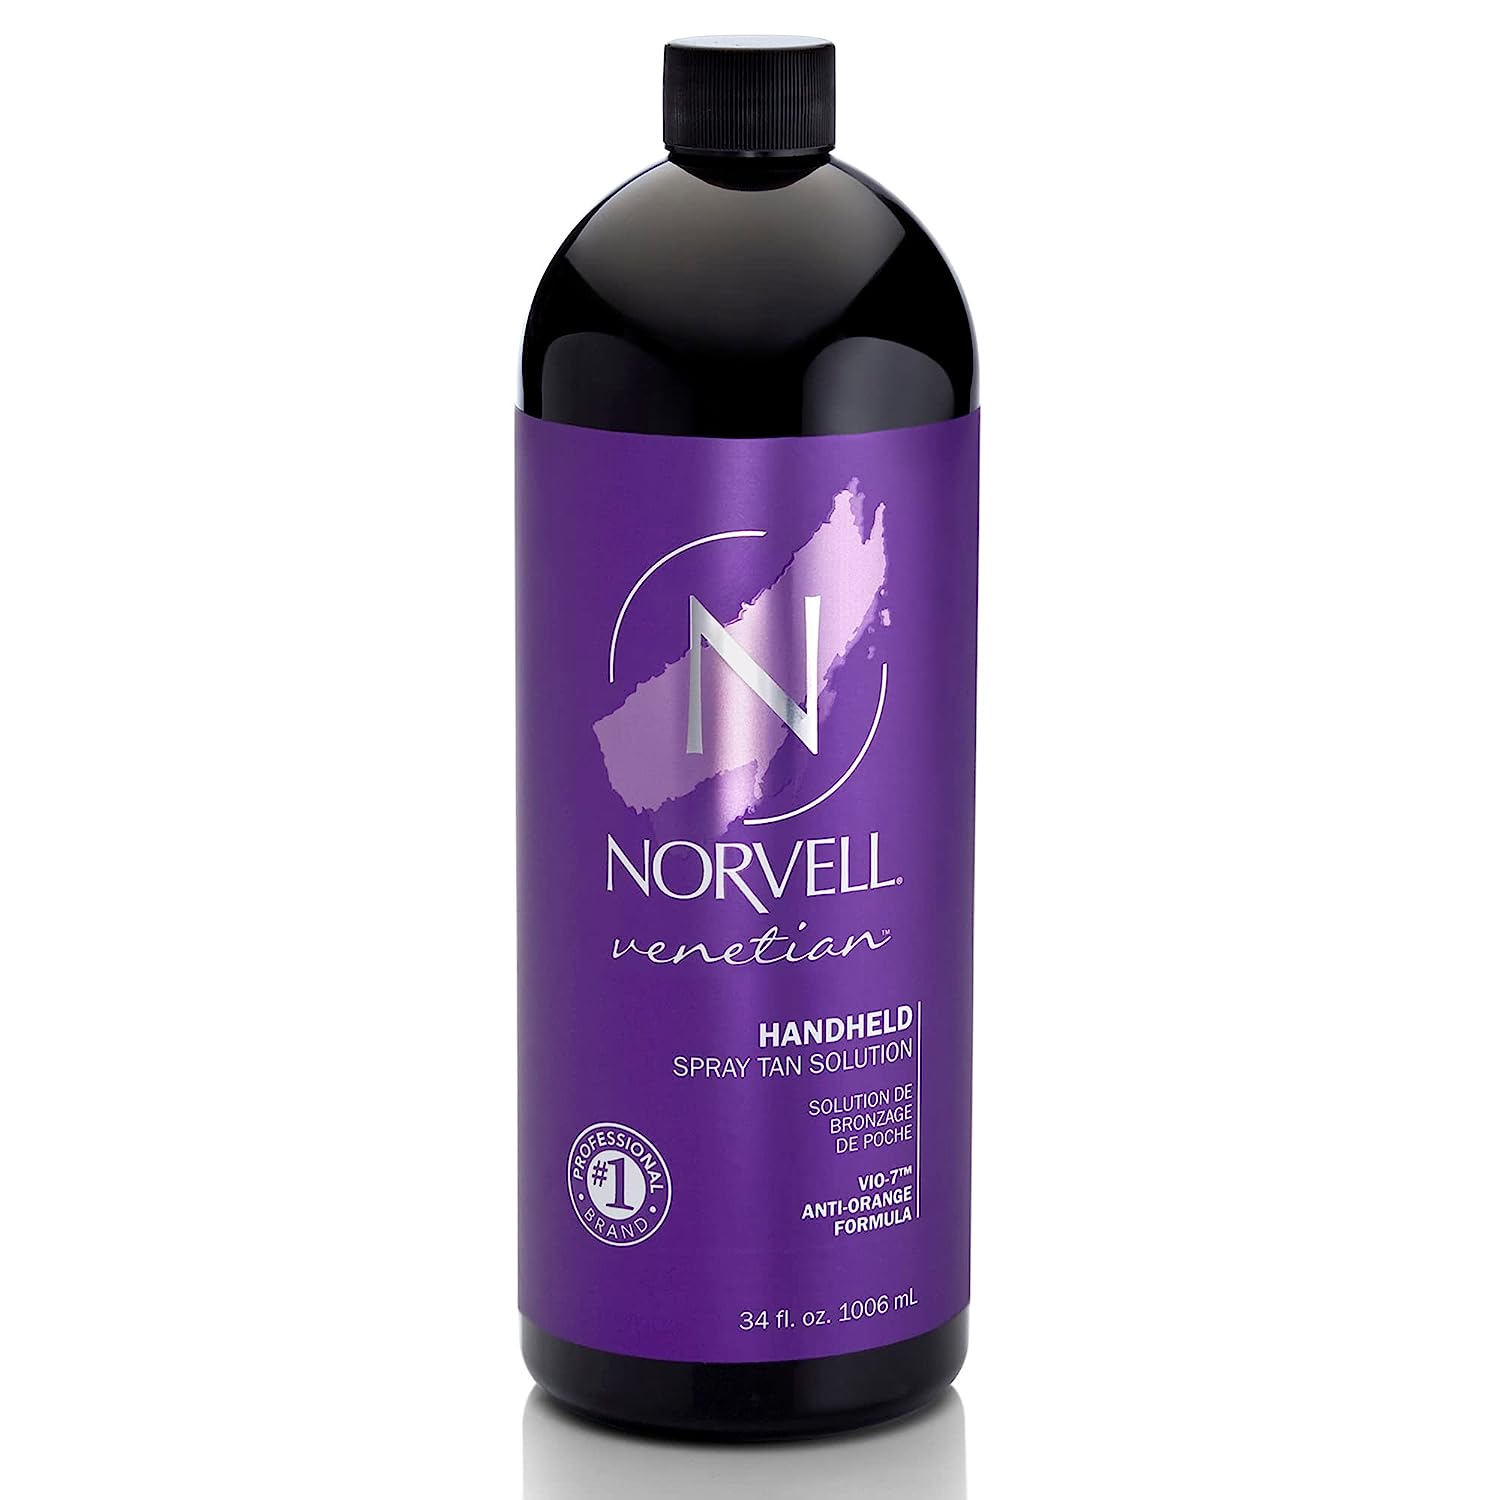 Norvell Premium Sunless Tanning Solution - Venetian, 1 Liter